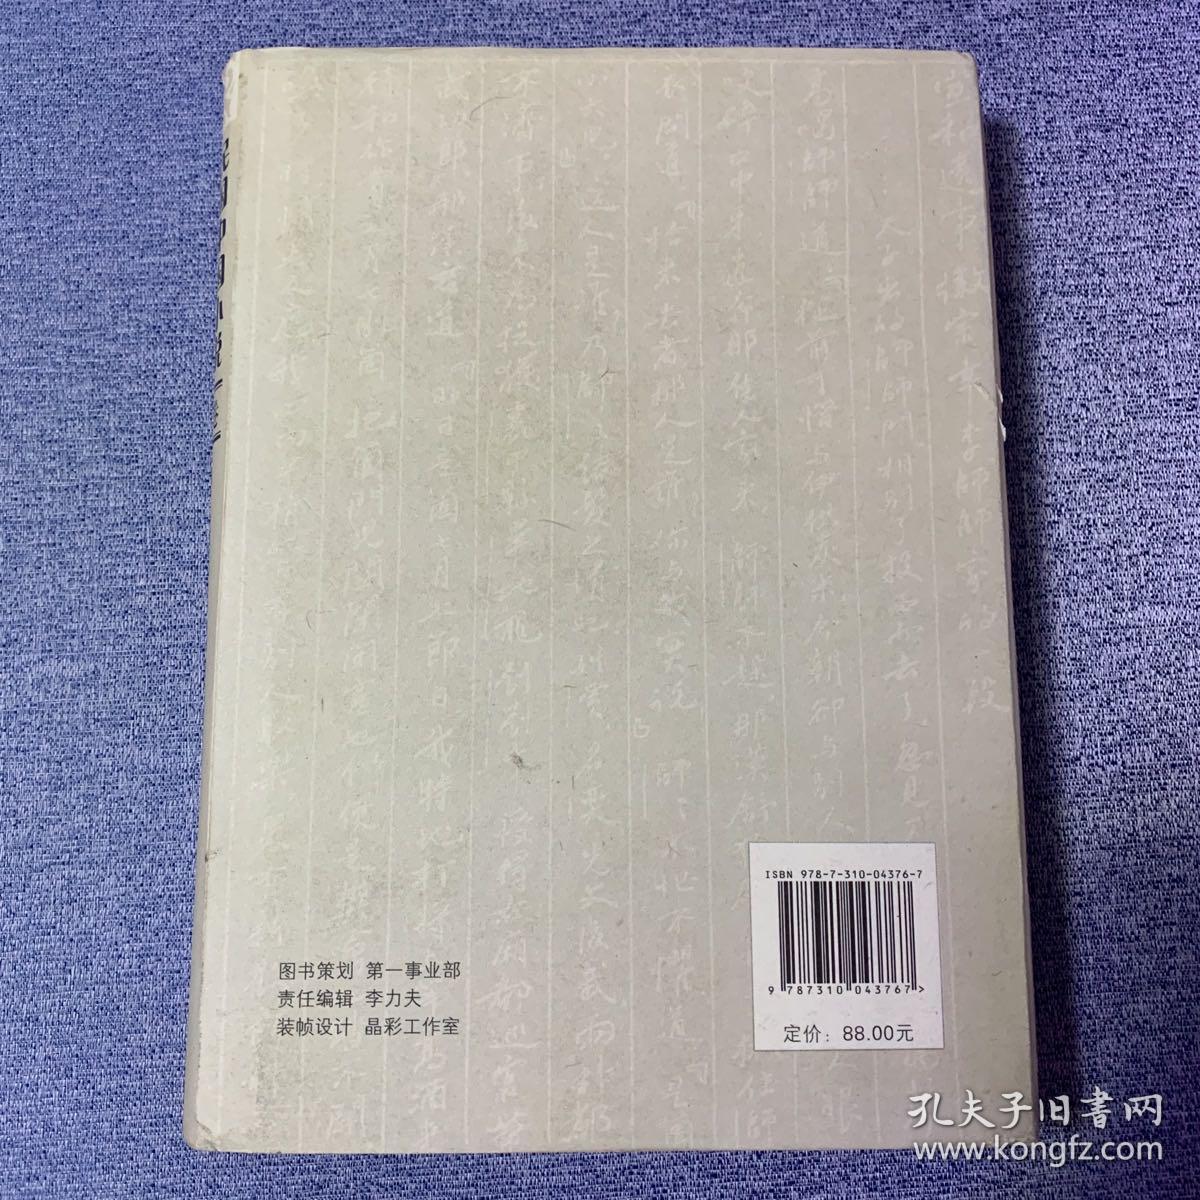 民国中国小说史著集成  第1卷